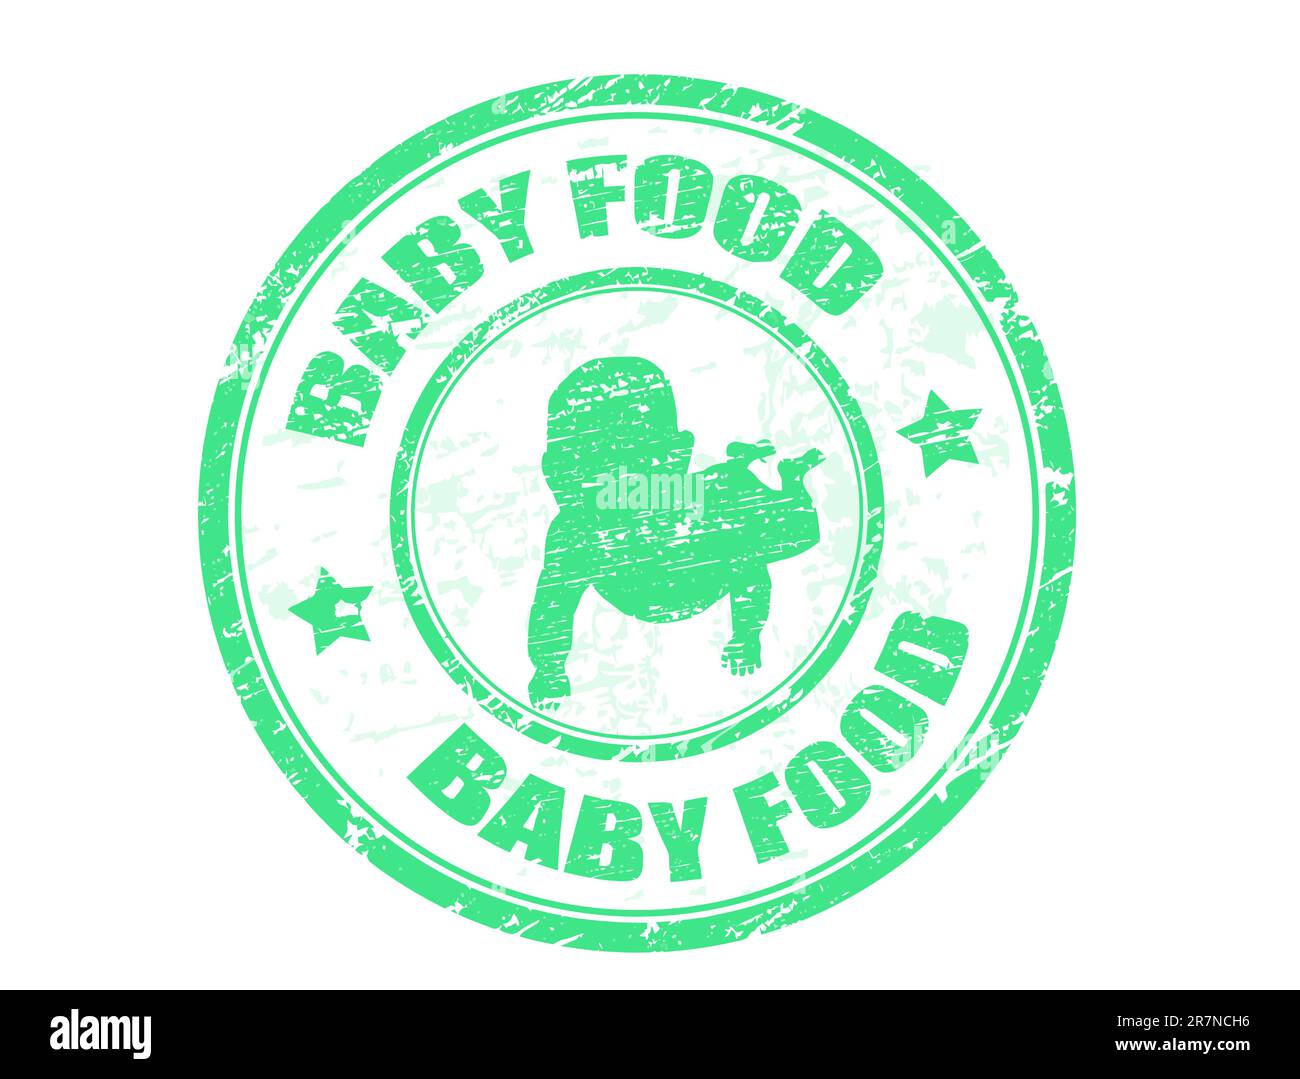 Tampon en caoutchouc vert avec la forme du bébé et le texte « Baby food » écrit à l'intérieur du timbre Illustration de Vecteur